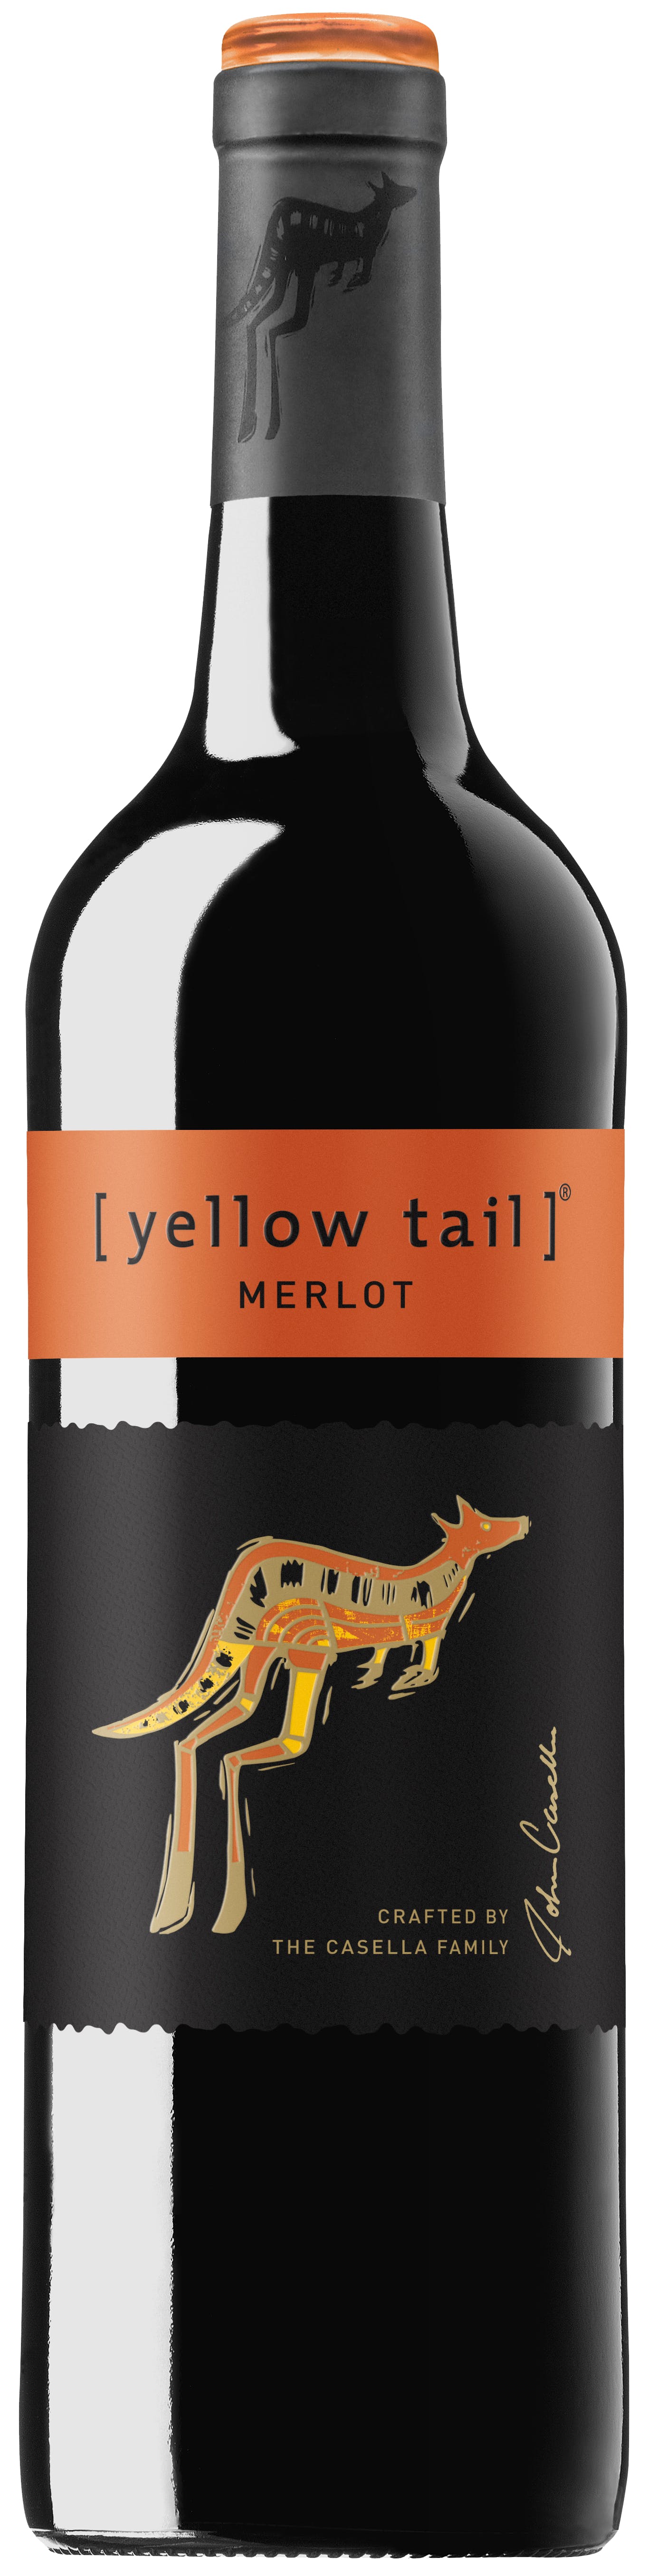 images/wine/Red Wine/Yellow Tail Merlot 750ml.jpg